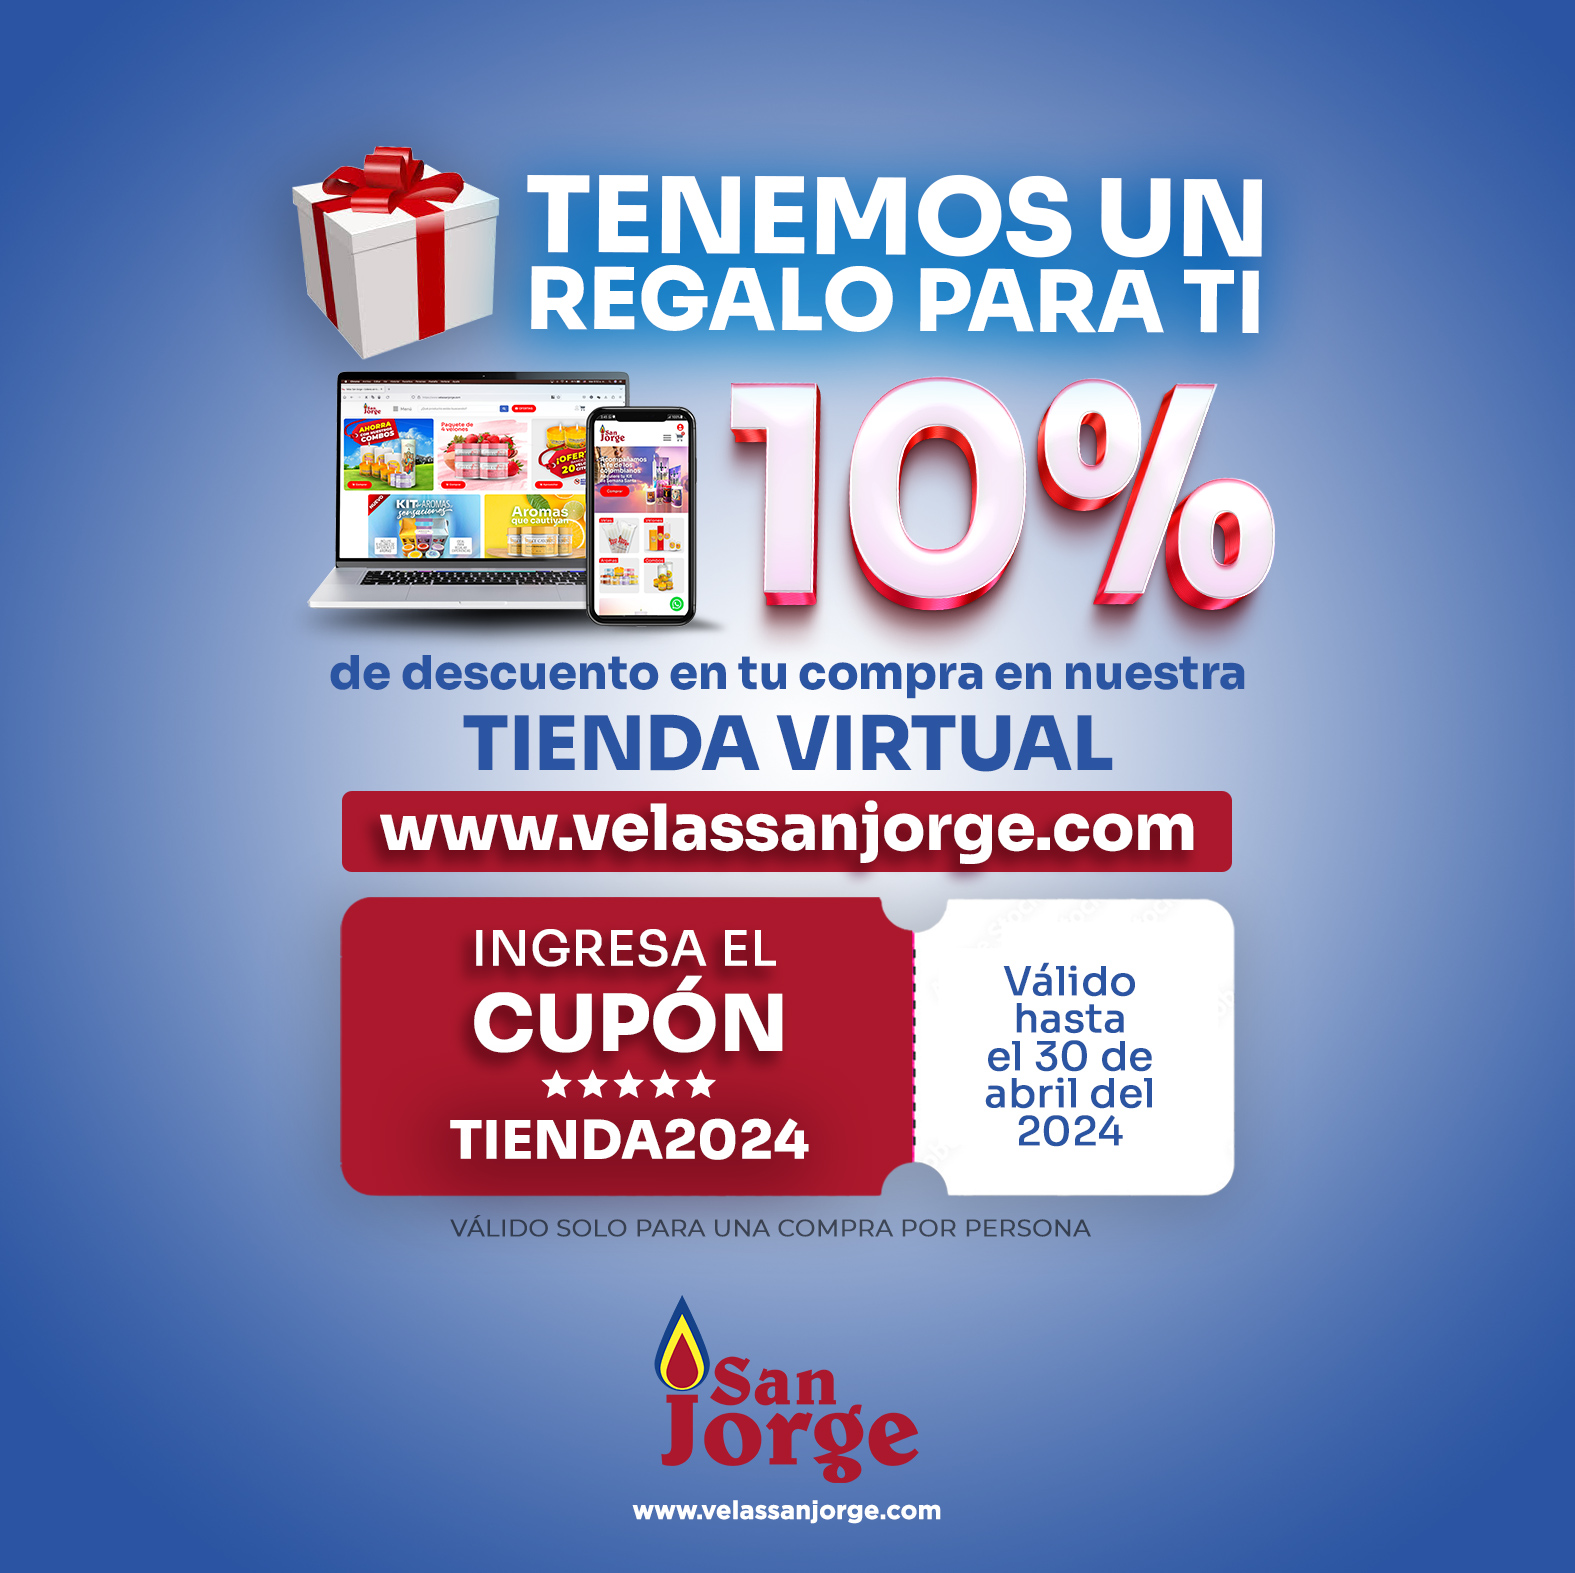 0% de descuento en tu compra en nuestra tienda virtual